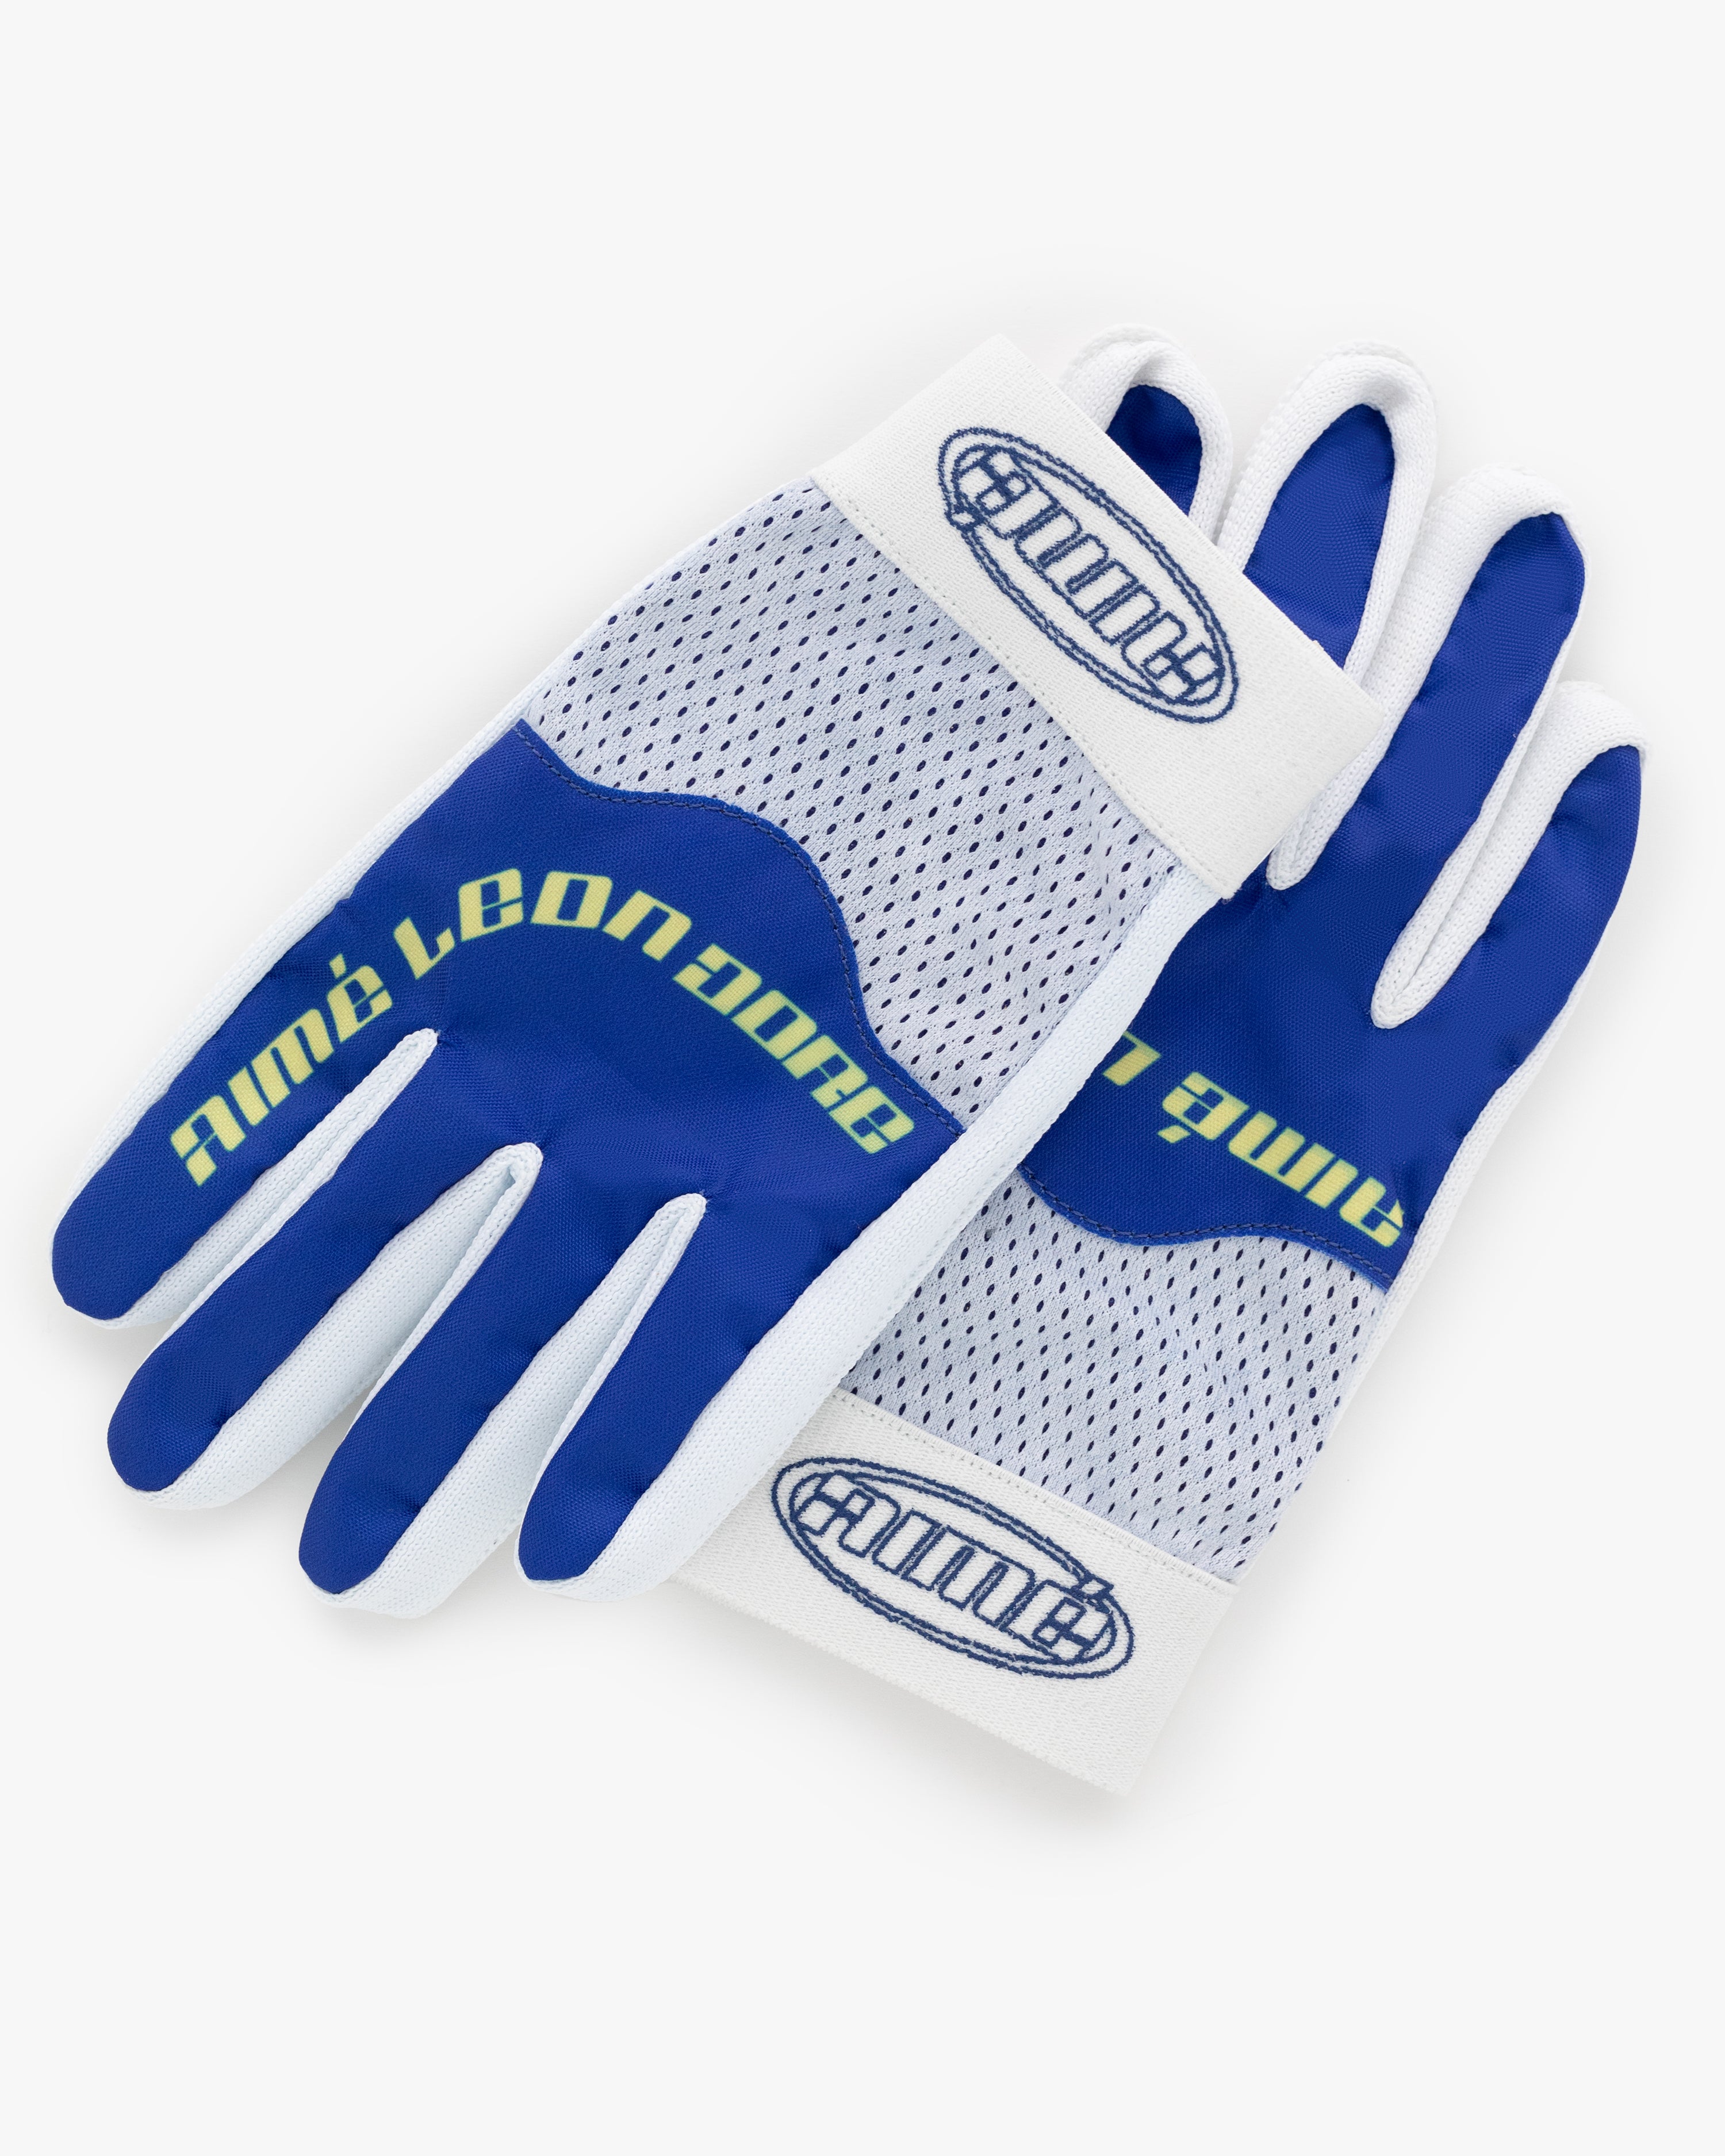 Downhill Biker Gloves